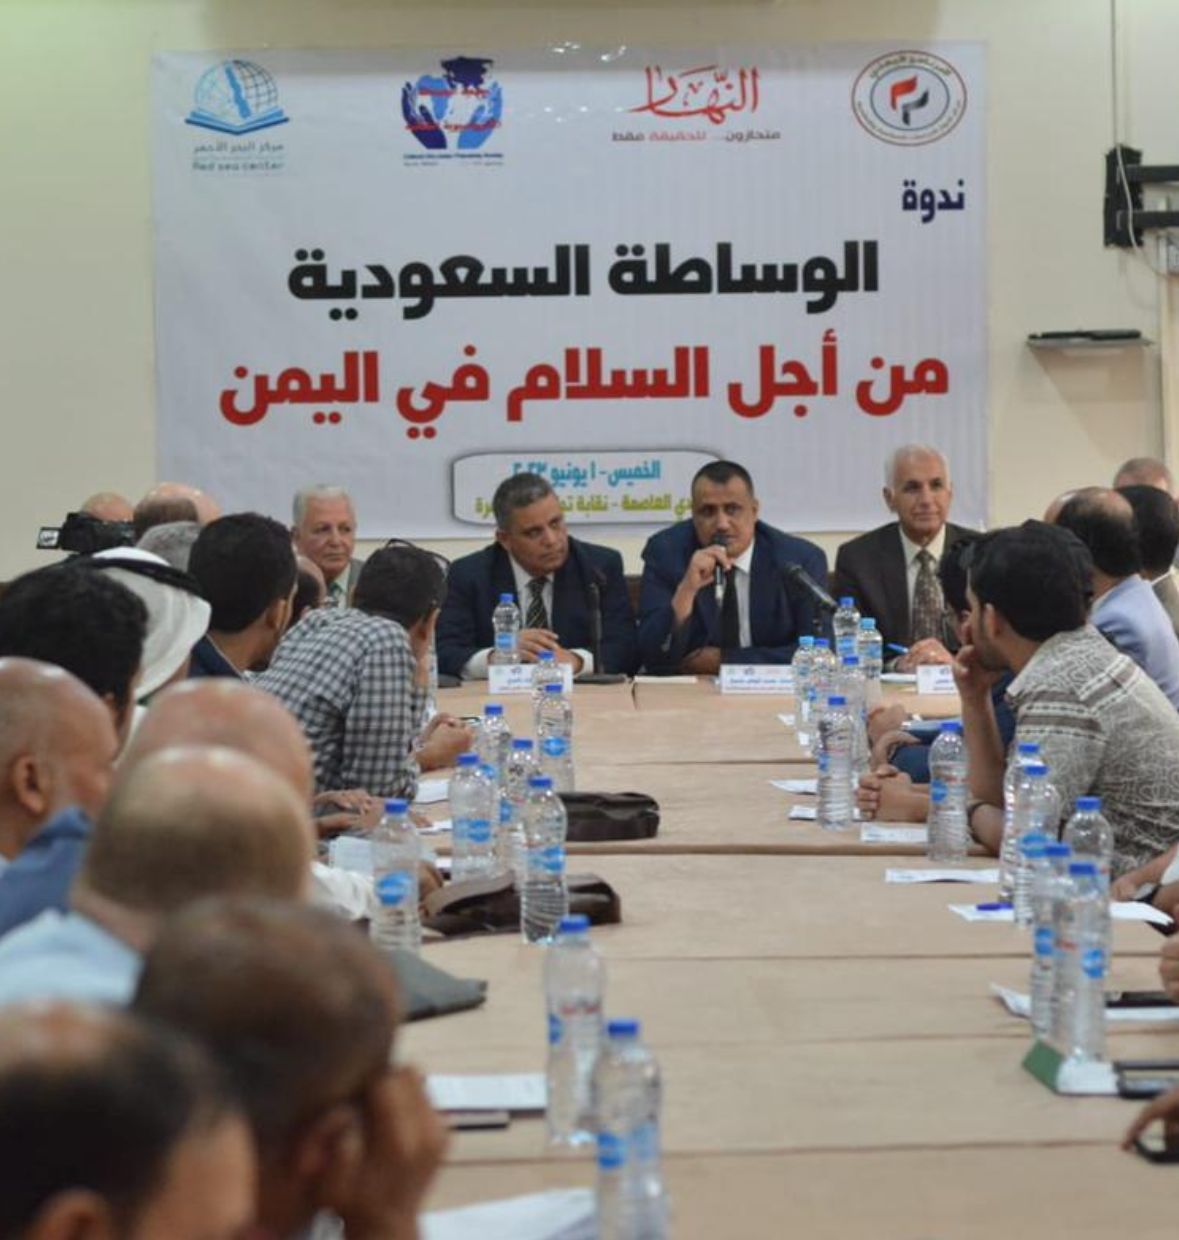 ندوة سياسية فكرية في القاهرة تؤكد على أهمية الوساطة السعودية للوصول لسلام في اليمن